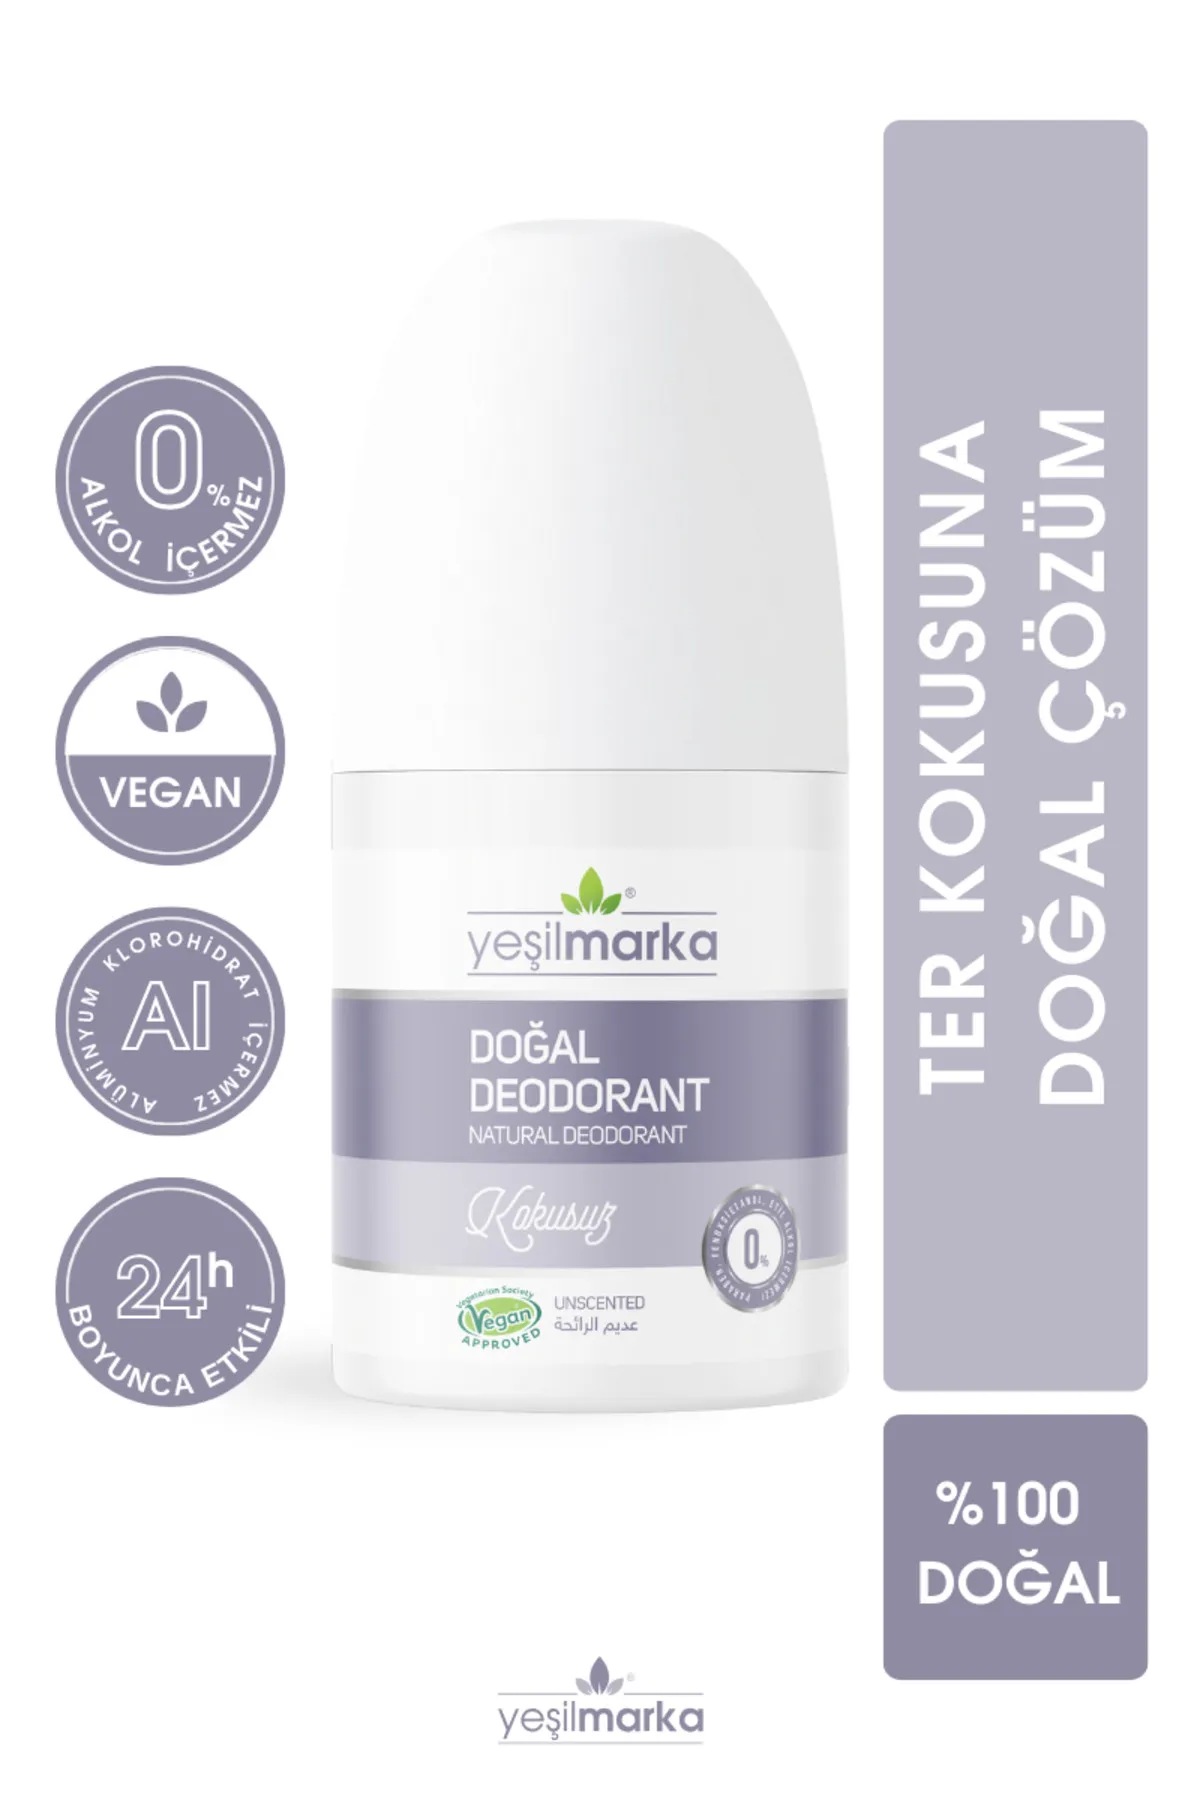 Yeşilmarka Doğal Deodorant - Kokusuz (50 ml) - Thumbnail